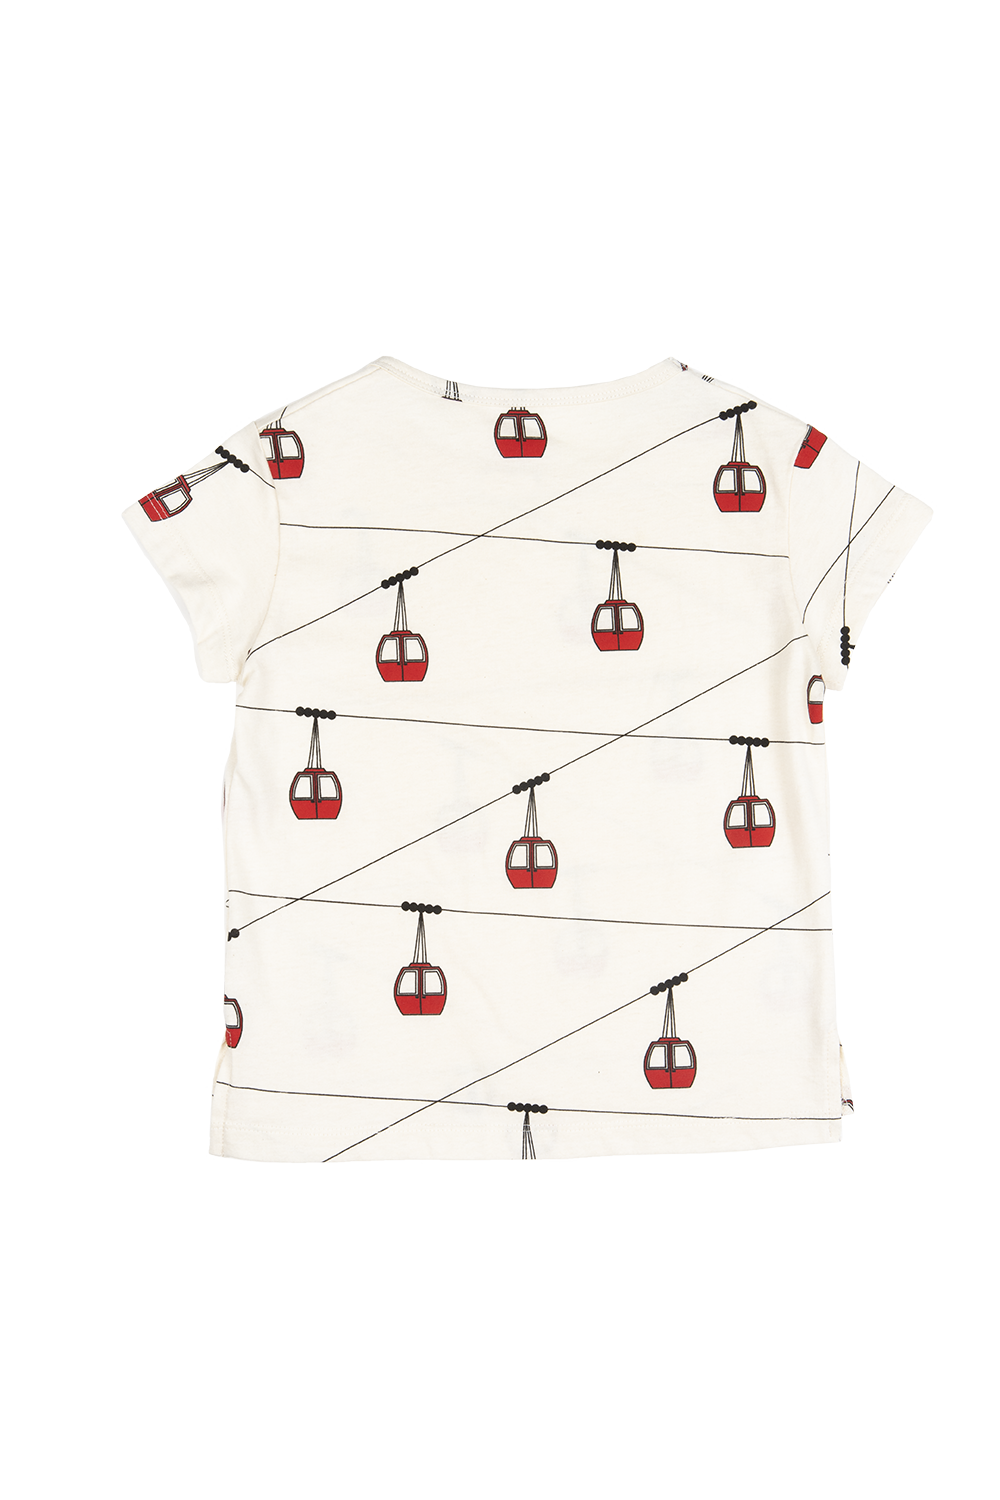 T-shirt Téléférique pattern - crème-red